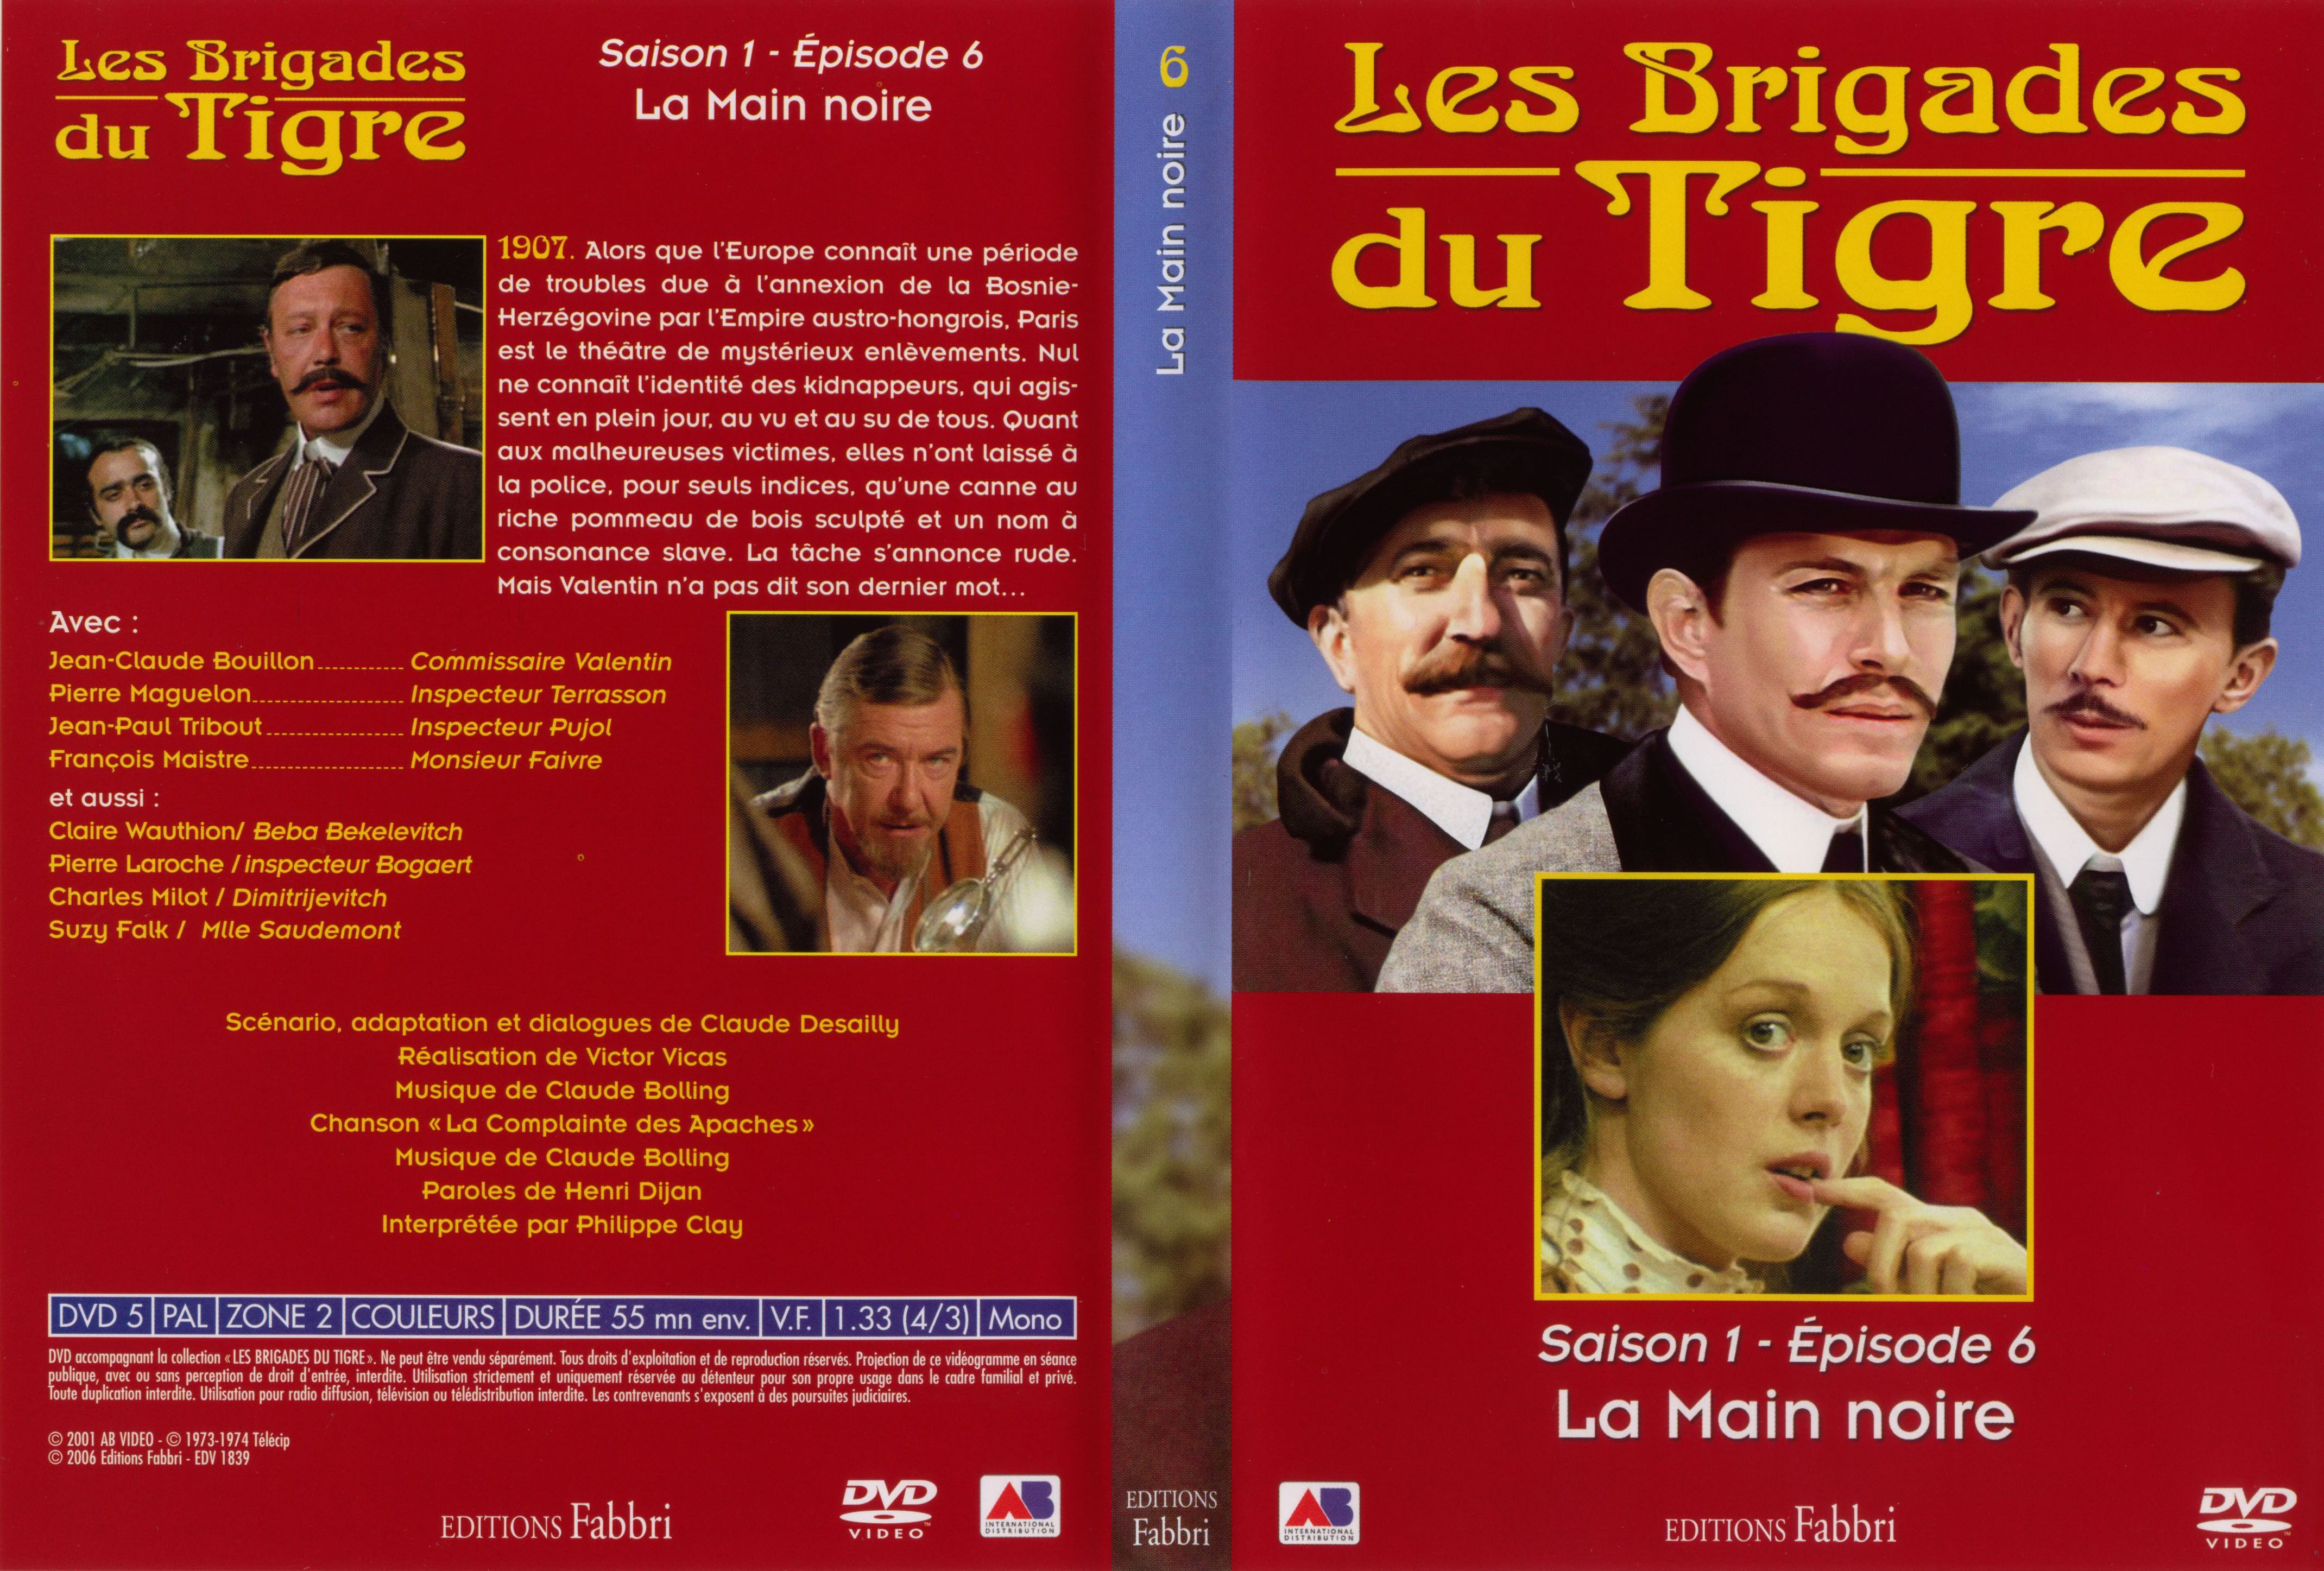 Jaquette DVD Les brigades du tigre saison 1 pisode 6